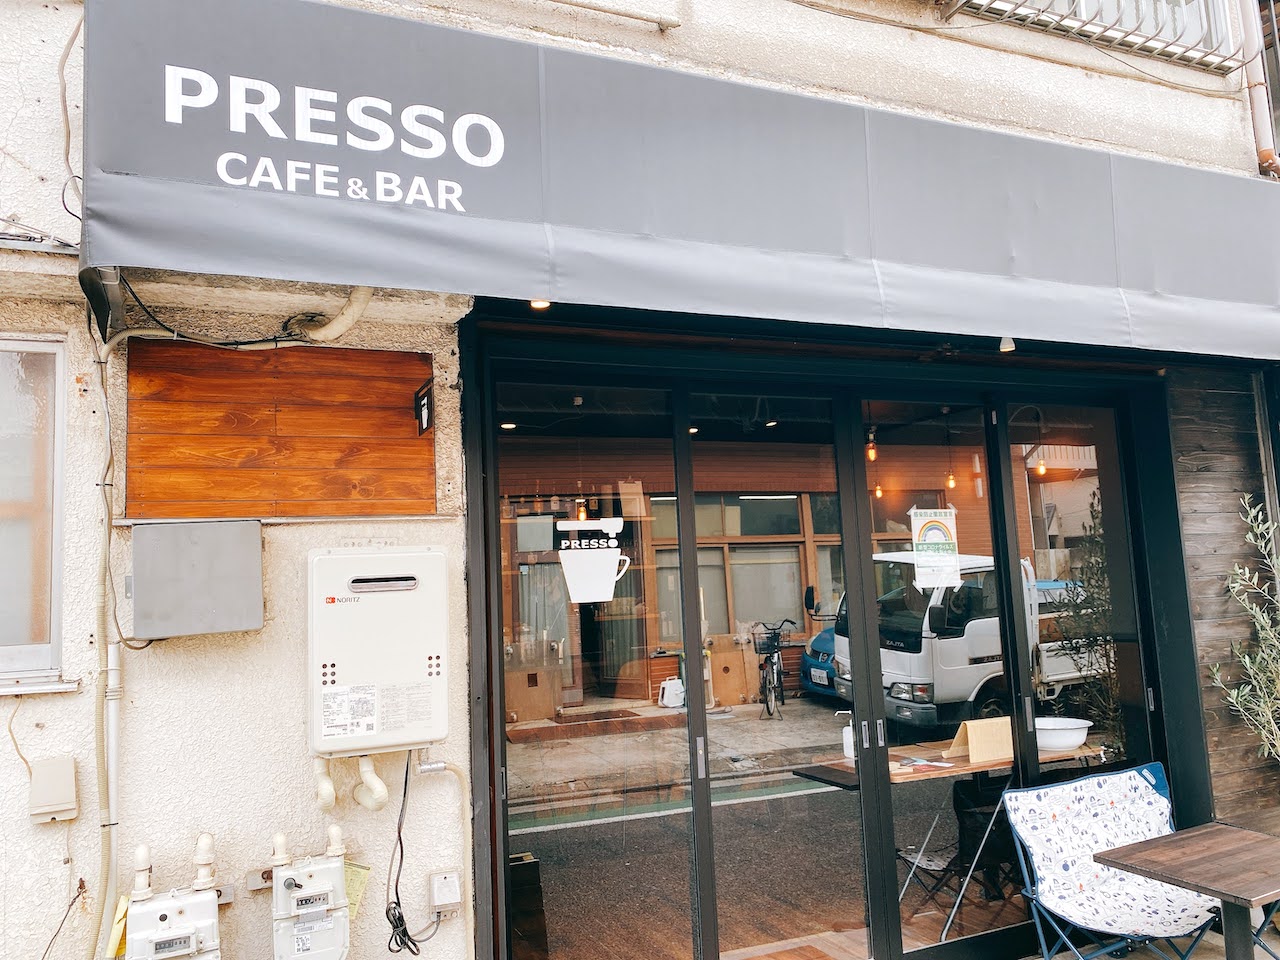 PRESSO cafe bar